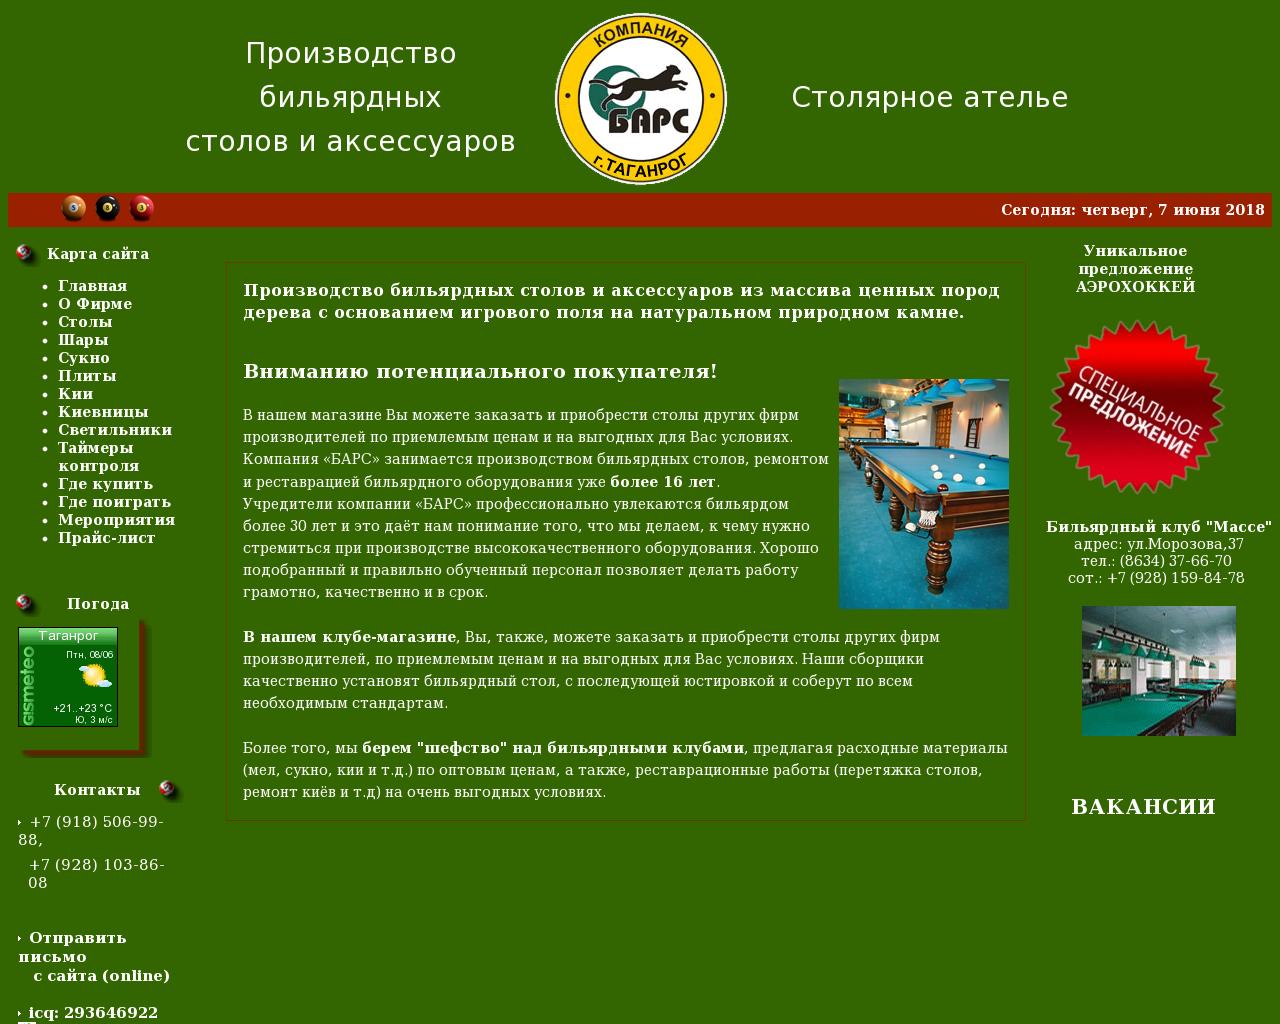 Изображение сайта billiard61.ru в разрешении 1280x1024